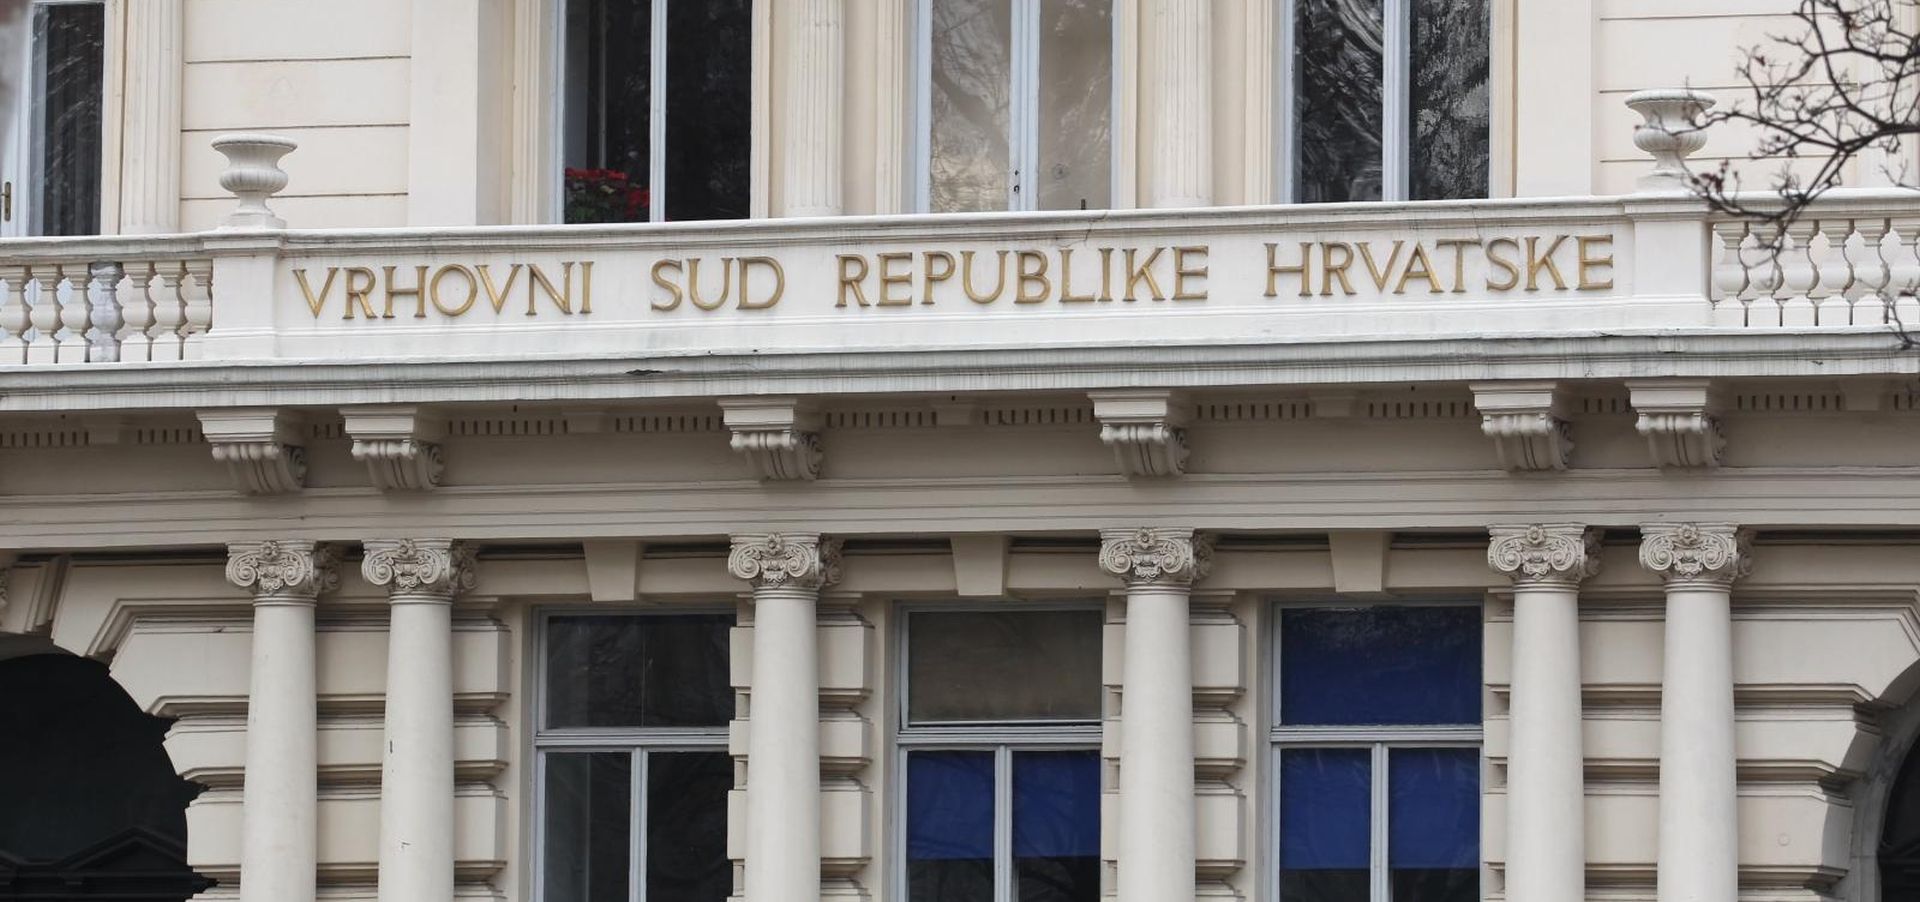 17.01.2015., Zagreb - Zgrada Vrhovnog suda Republike Hrvatske. 
Photo: Zeljko Lukunic/PIXSELL